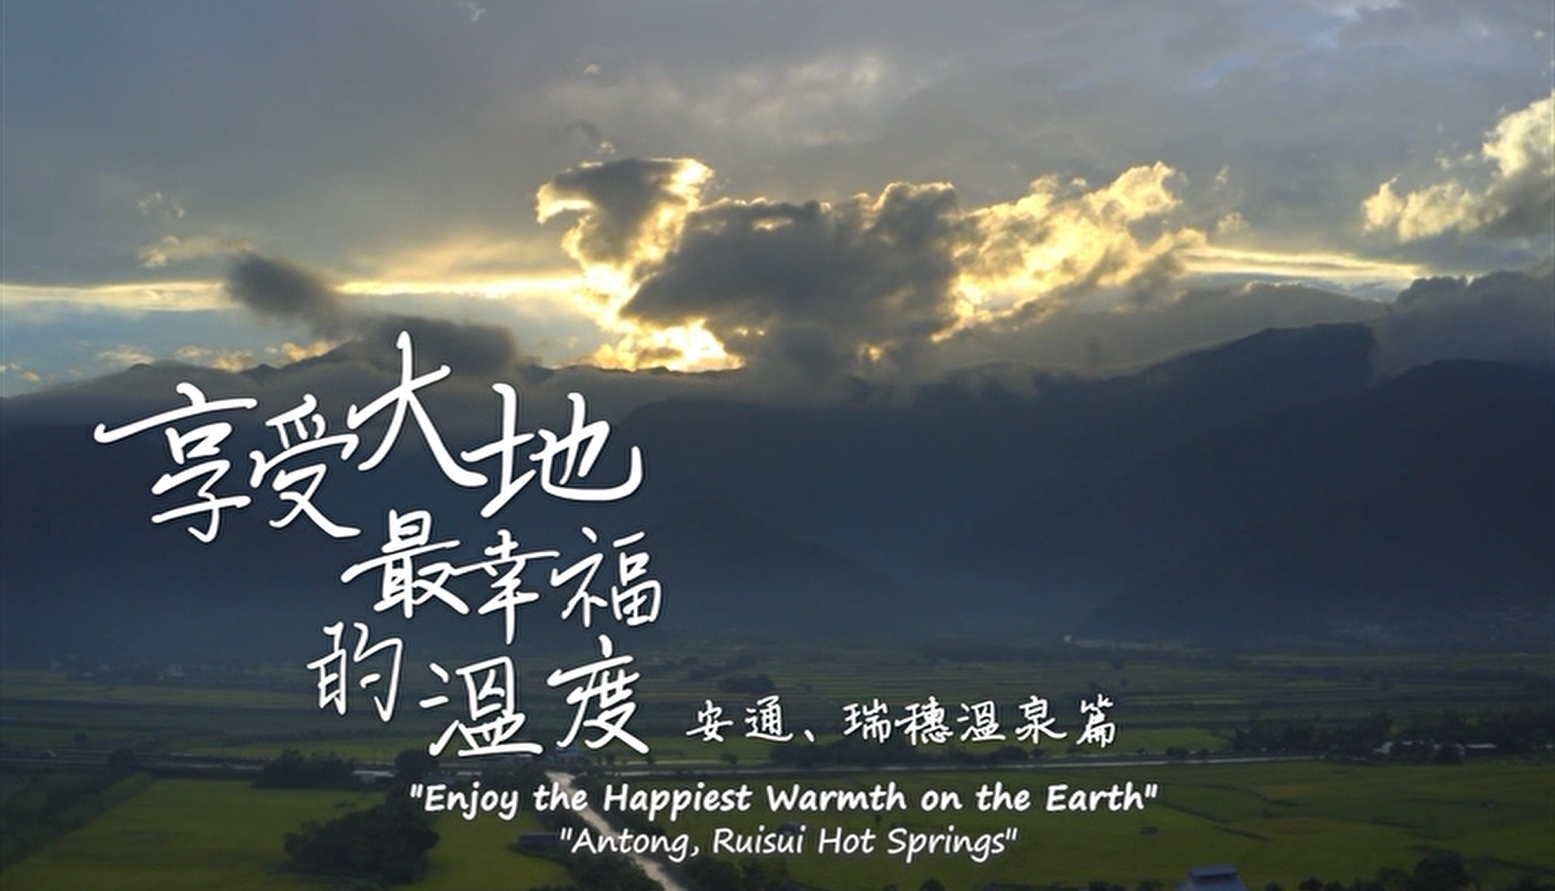 花東縱谷地質地景觀光宣傳影片：享受大地最幸福的溫度─安通、瑞穗溫泉篇 (英文)